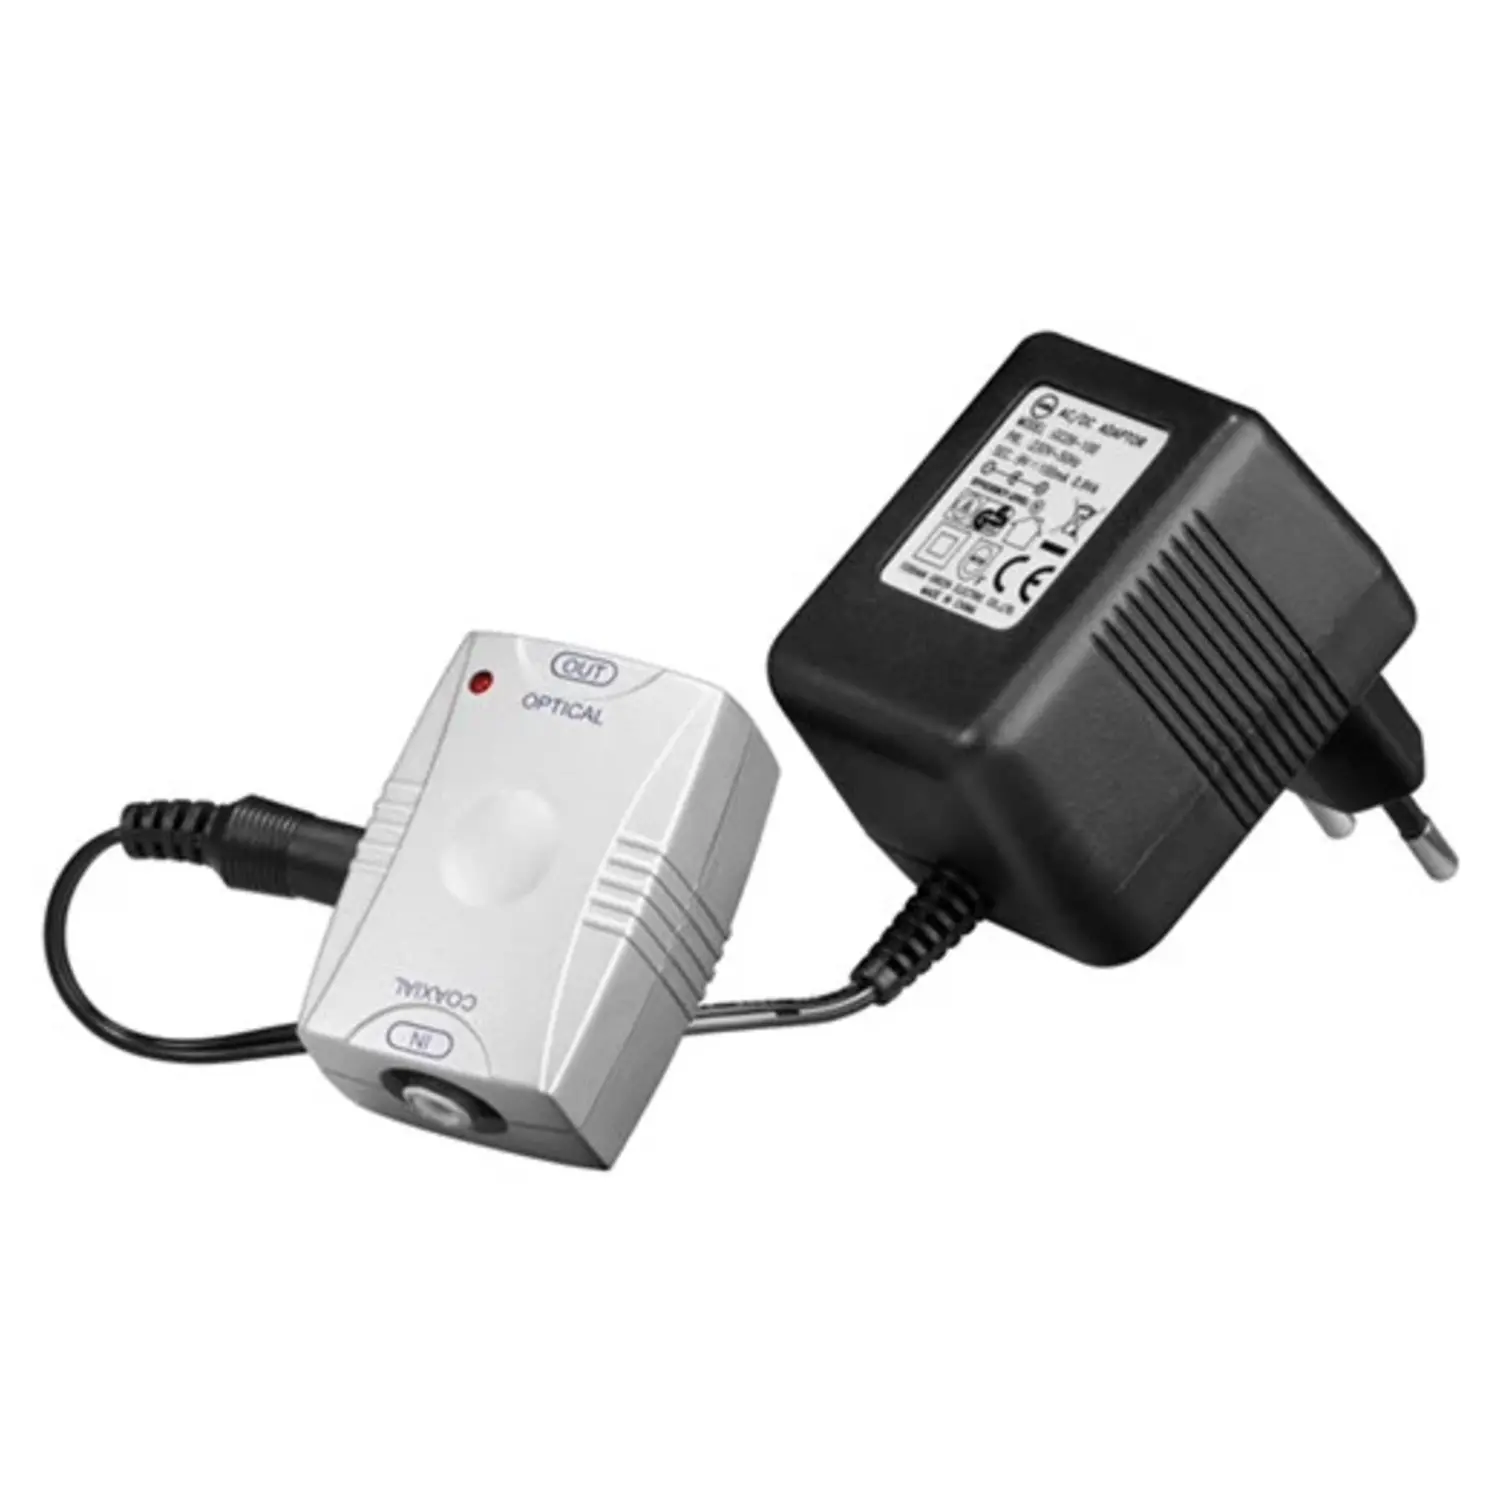 immagine del prodotto convertitore segnale elettrico digitale a toslink ottico CE 220-240 volt wnt 11918